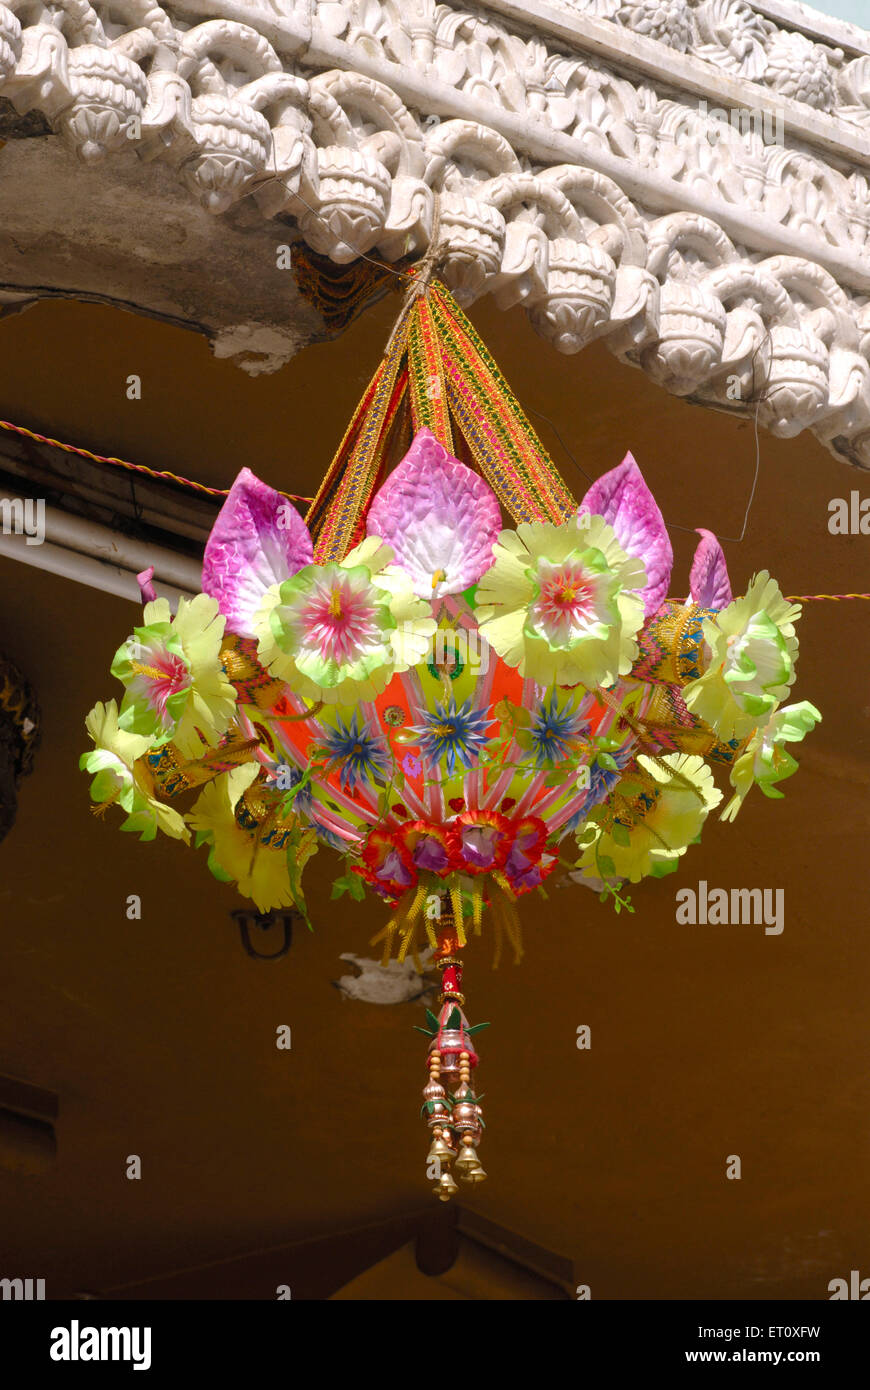 Chandelier de fleurs artificielles accroché à l'entrée du temple Shreemant Dagdu Sheth Halwai Ganpati, Pune, Maharashtra, Inde Banque D'Images